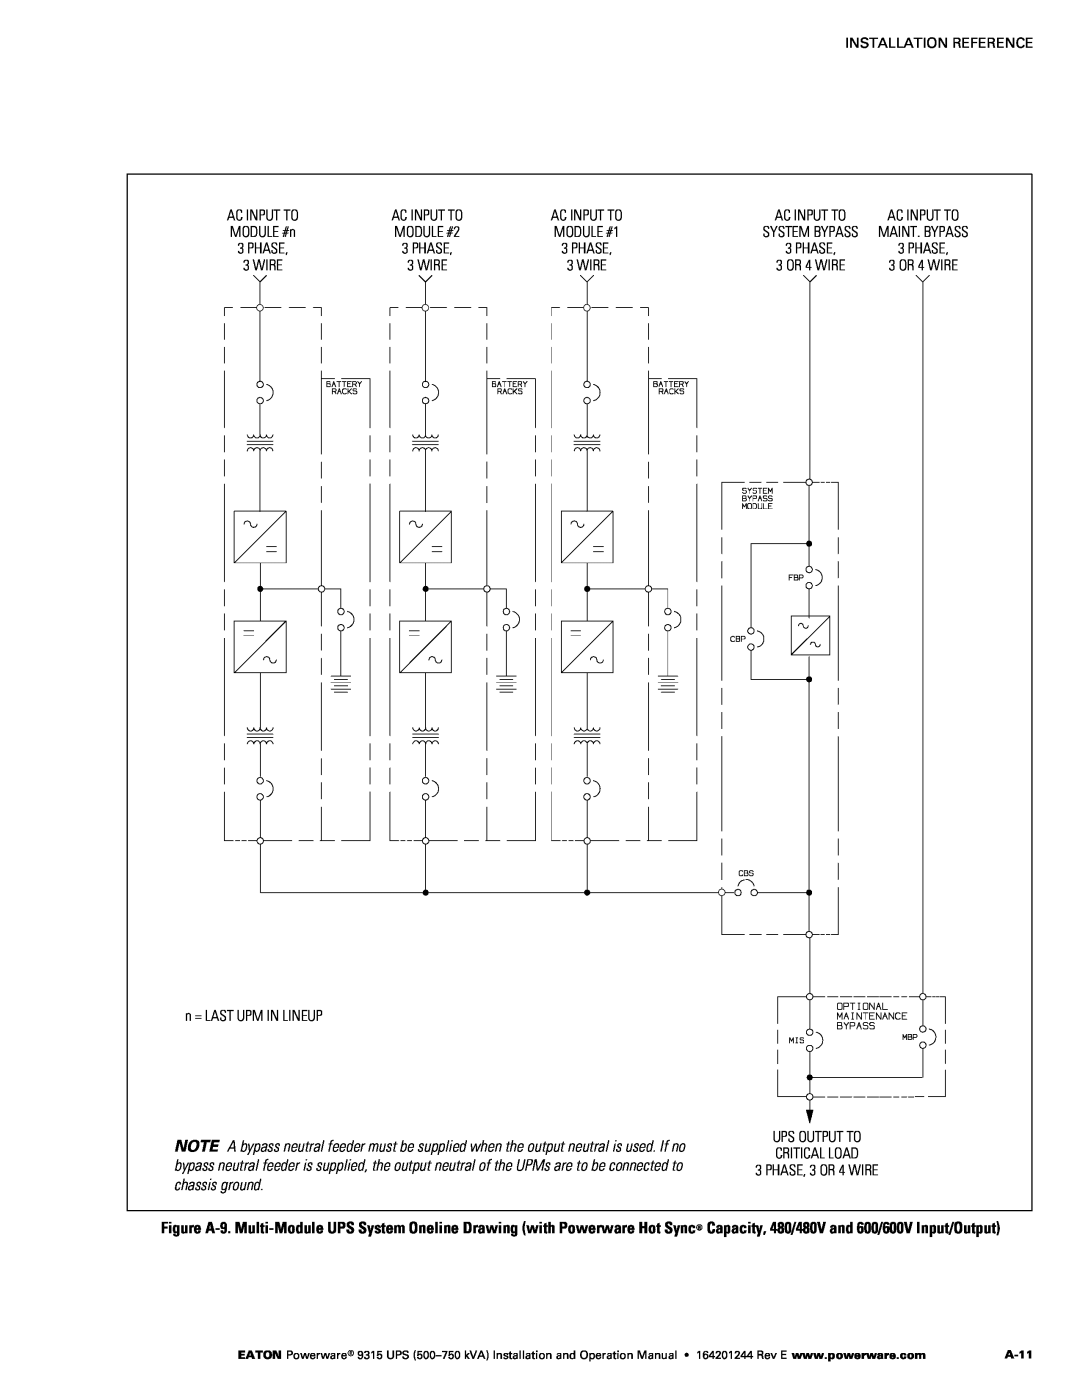 Powerware Powerware 9315 operation manual A-11 